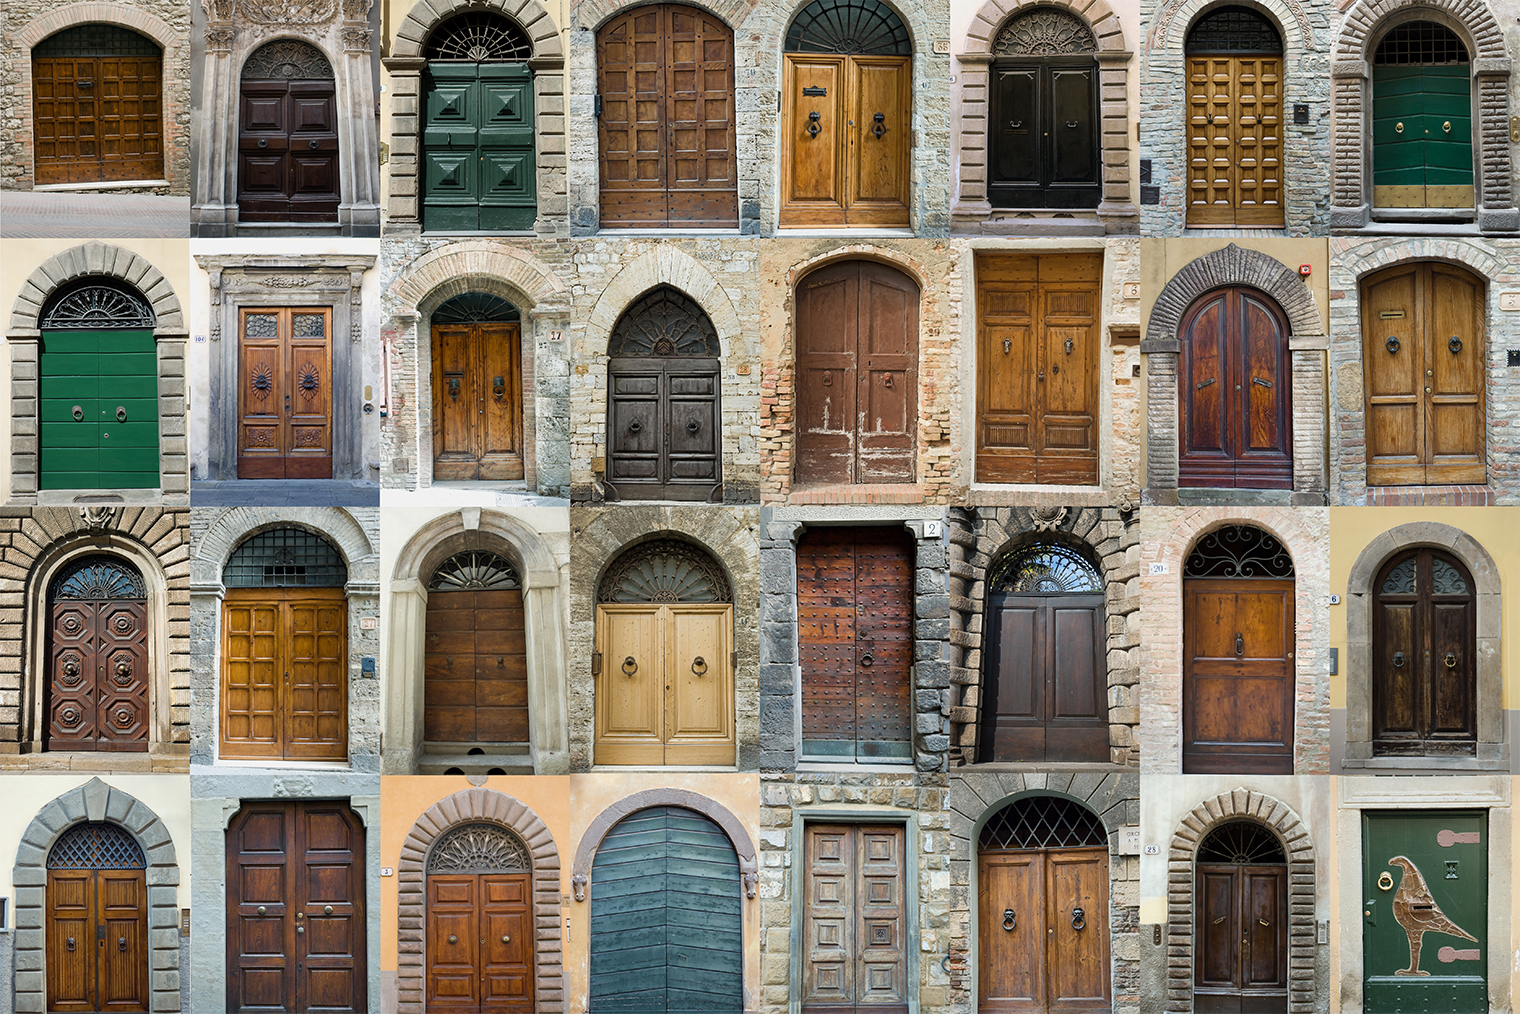 Вдохновился коллажем с тосканскими дверьми, который увидел в интернете. Фотография: K.Jakubowska / Shutterstock